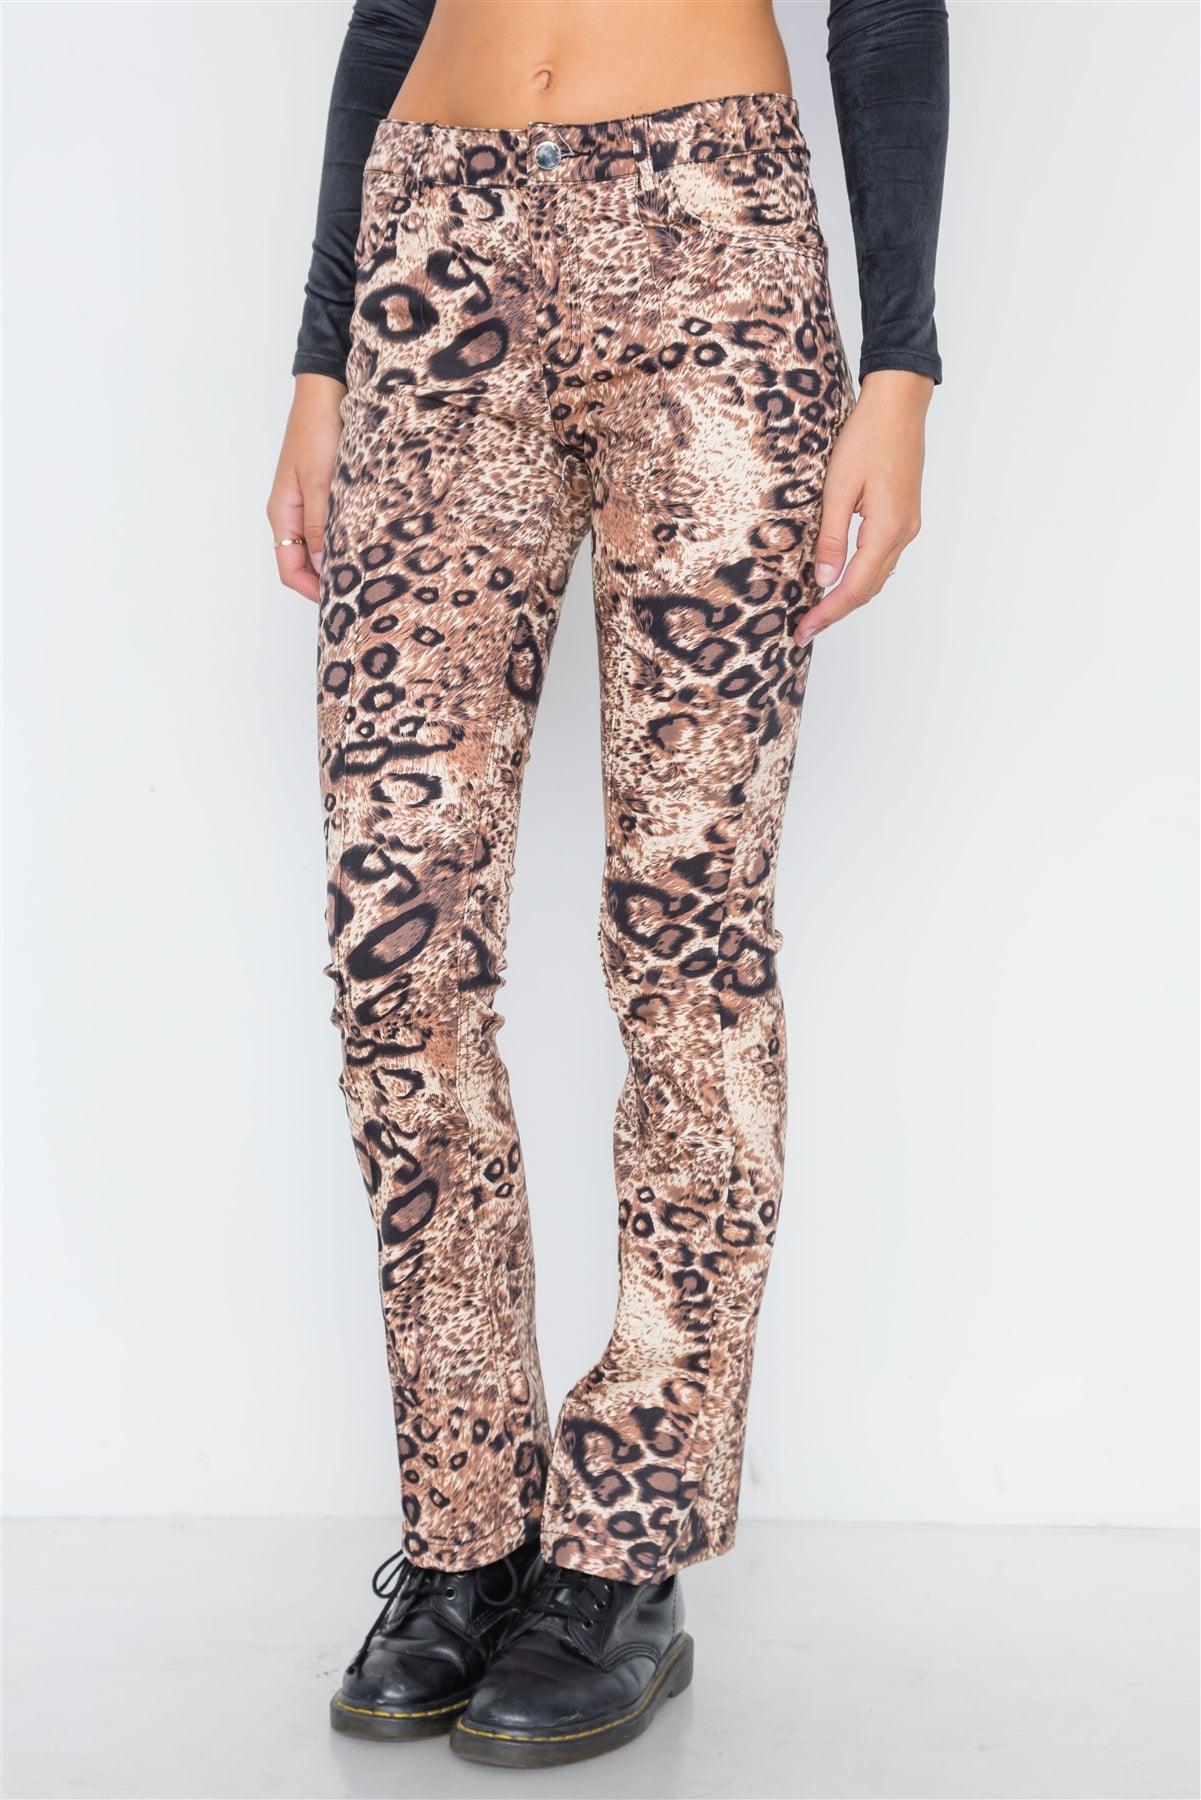 Brown Animal Print Flare Pants /2-2-2-2-1